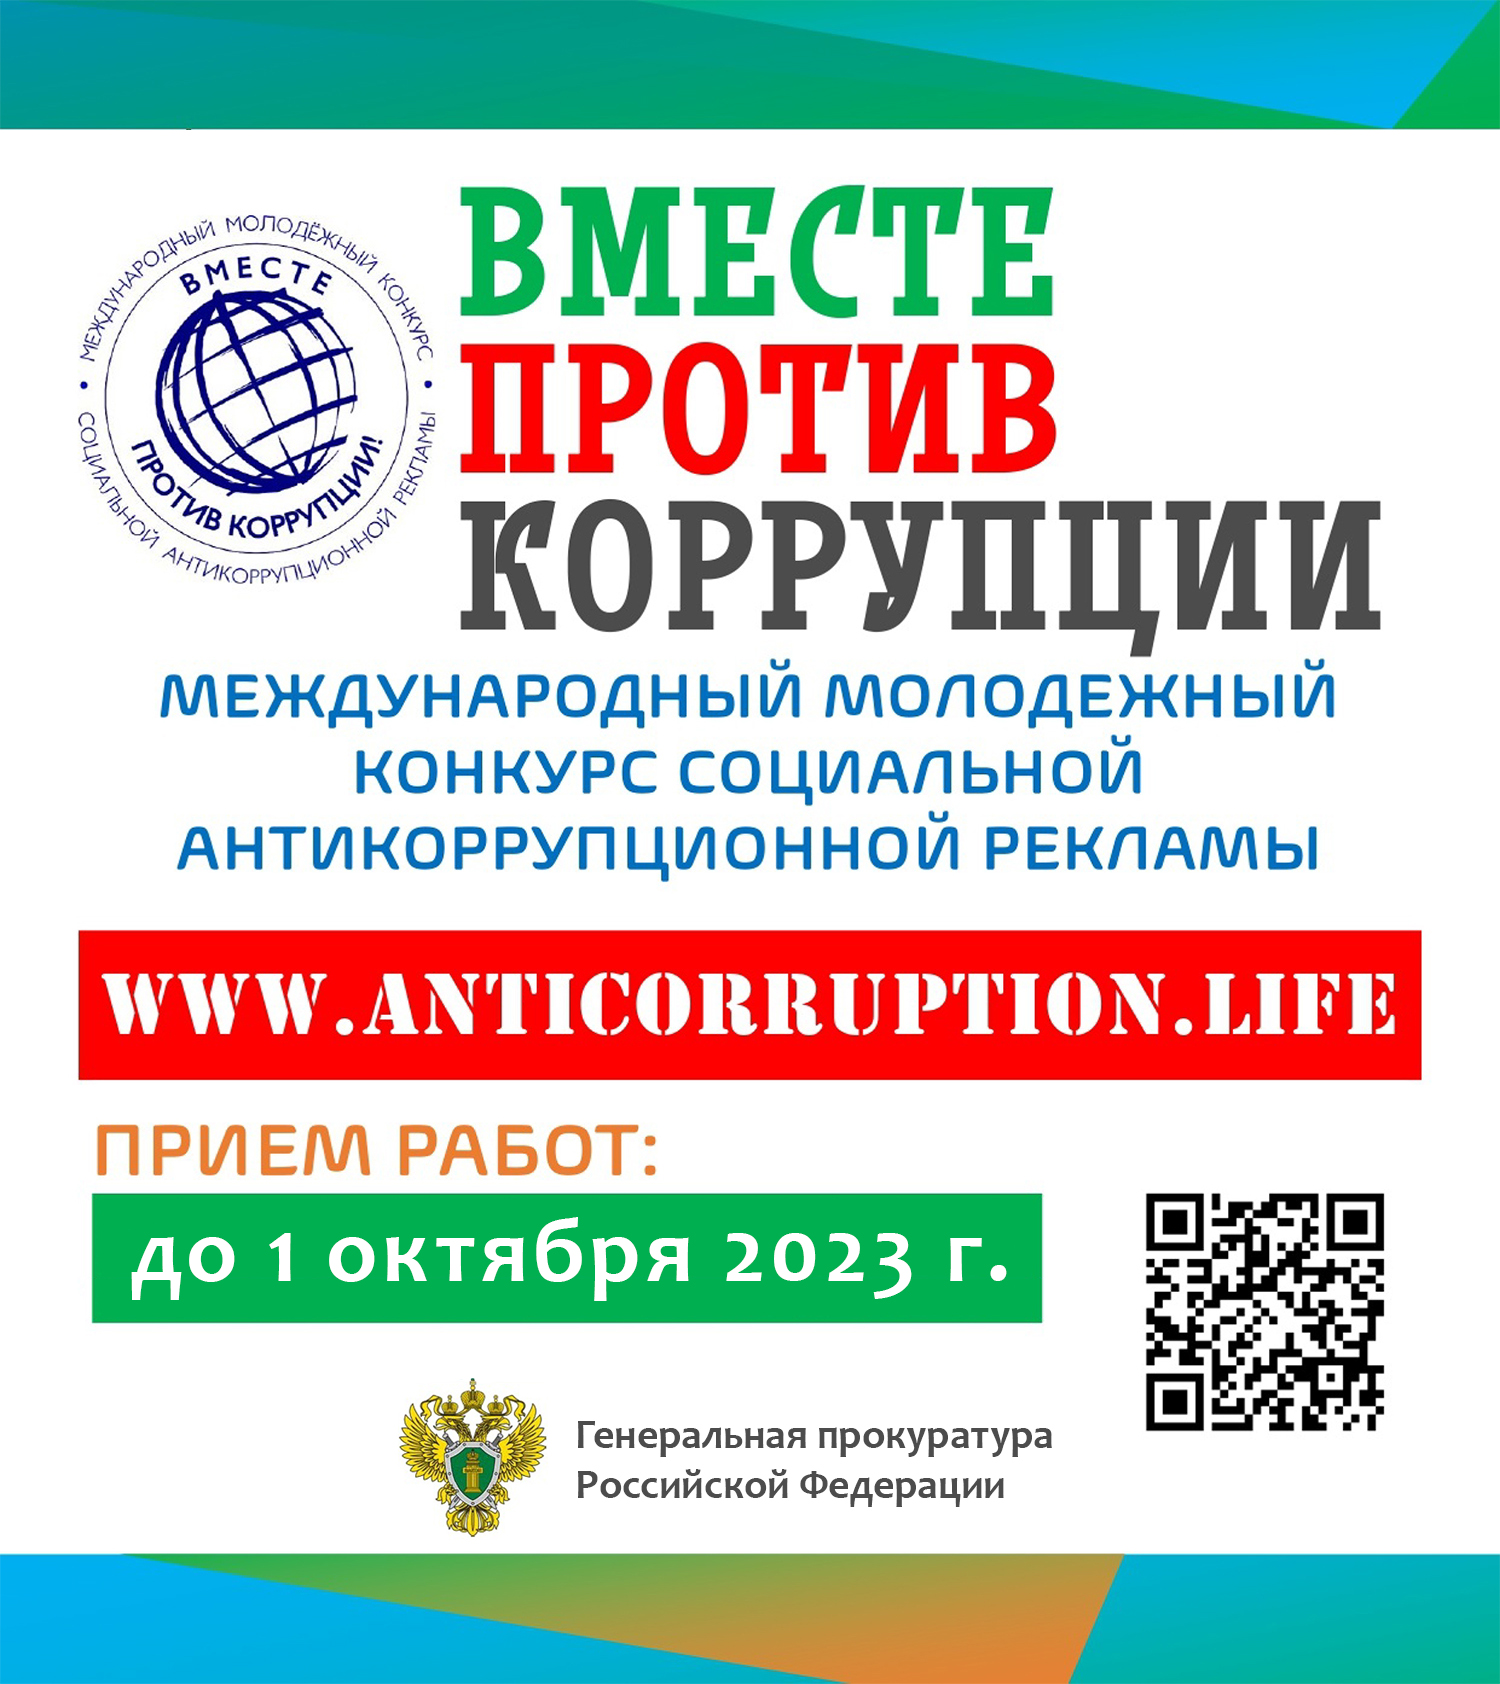 Международный молодежный конкурс социальной антикоррупционной рекламы &amp;quot;Вместе против коррупции!&amp;quot;.